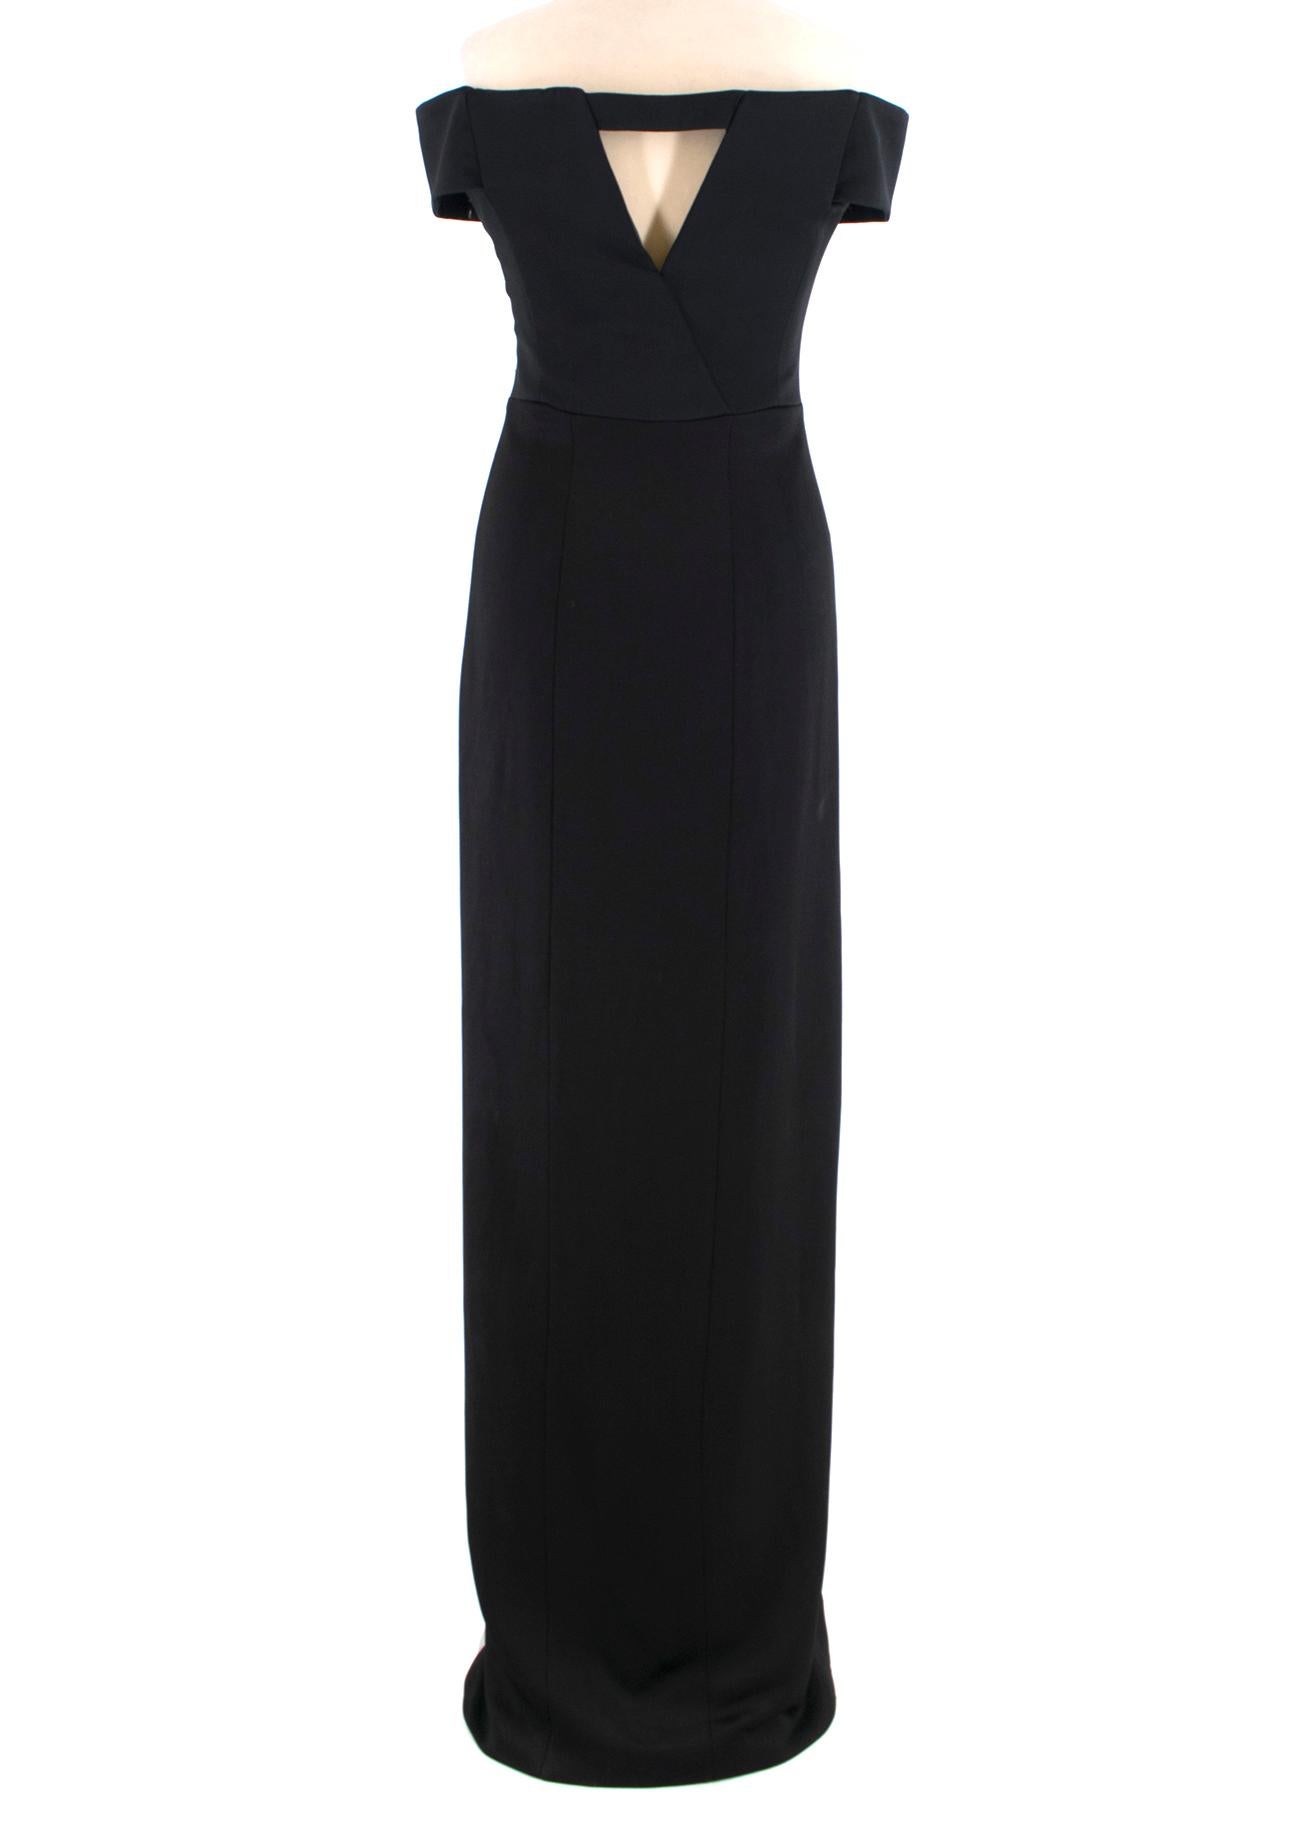 Black Galvan Satin Back Crepe Off-The-Shoulder Gown - Size US 6 For Sale